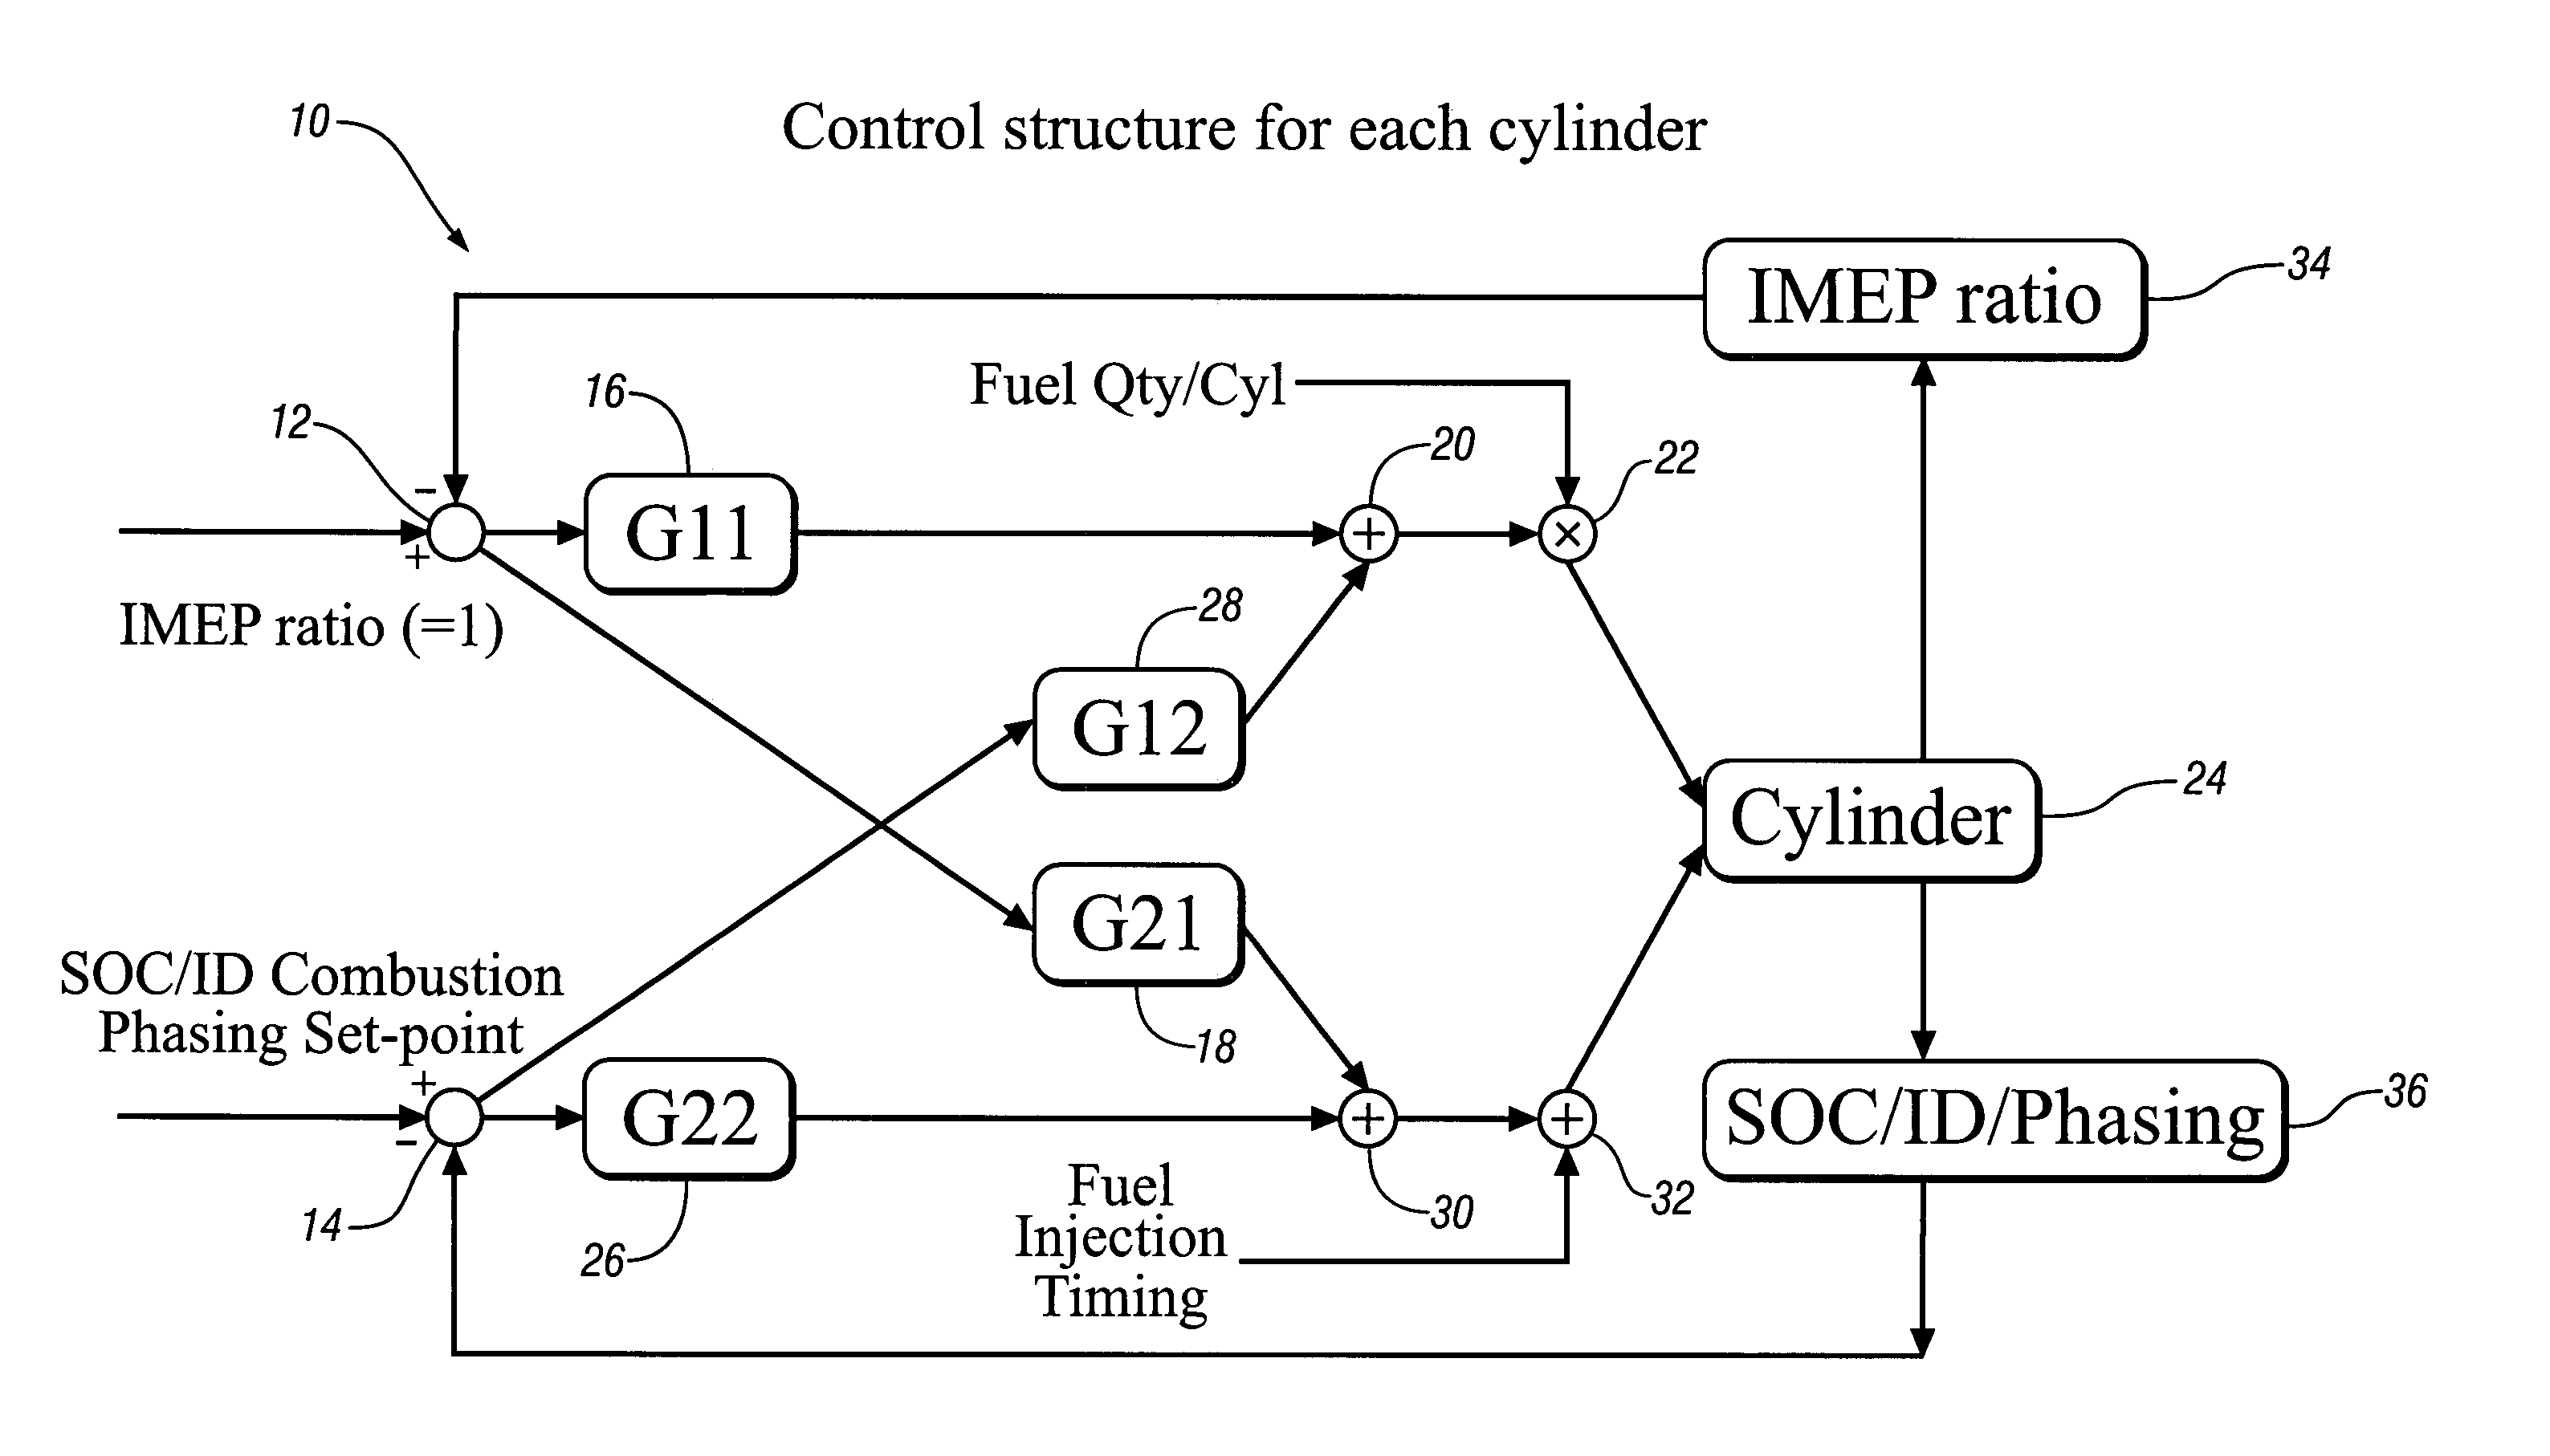 Engine cylinder-to-cylinder variation control